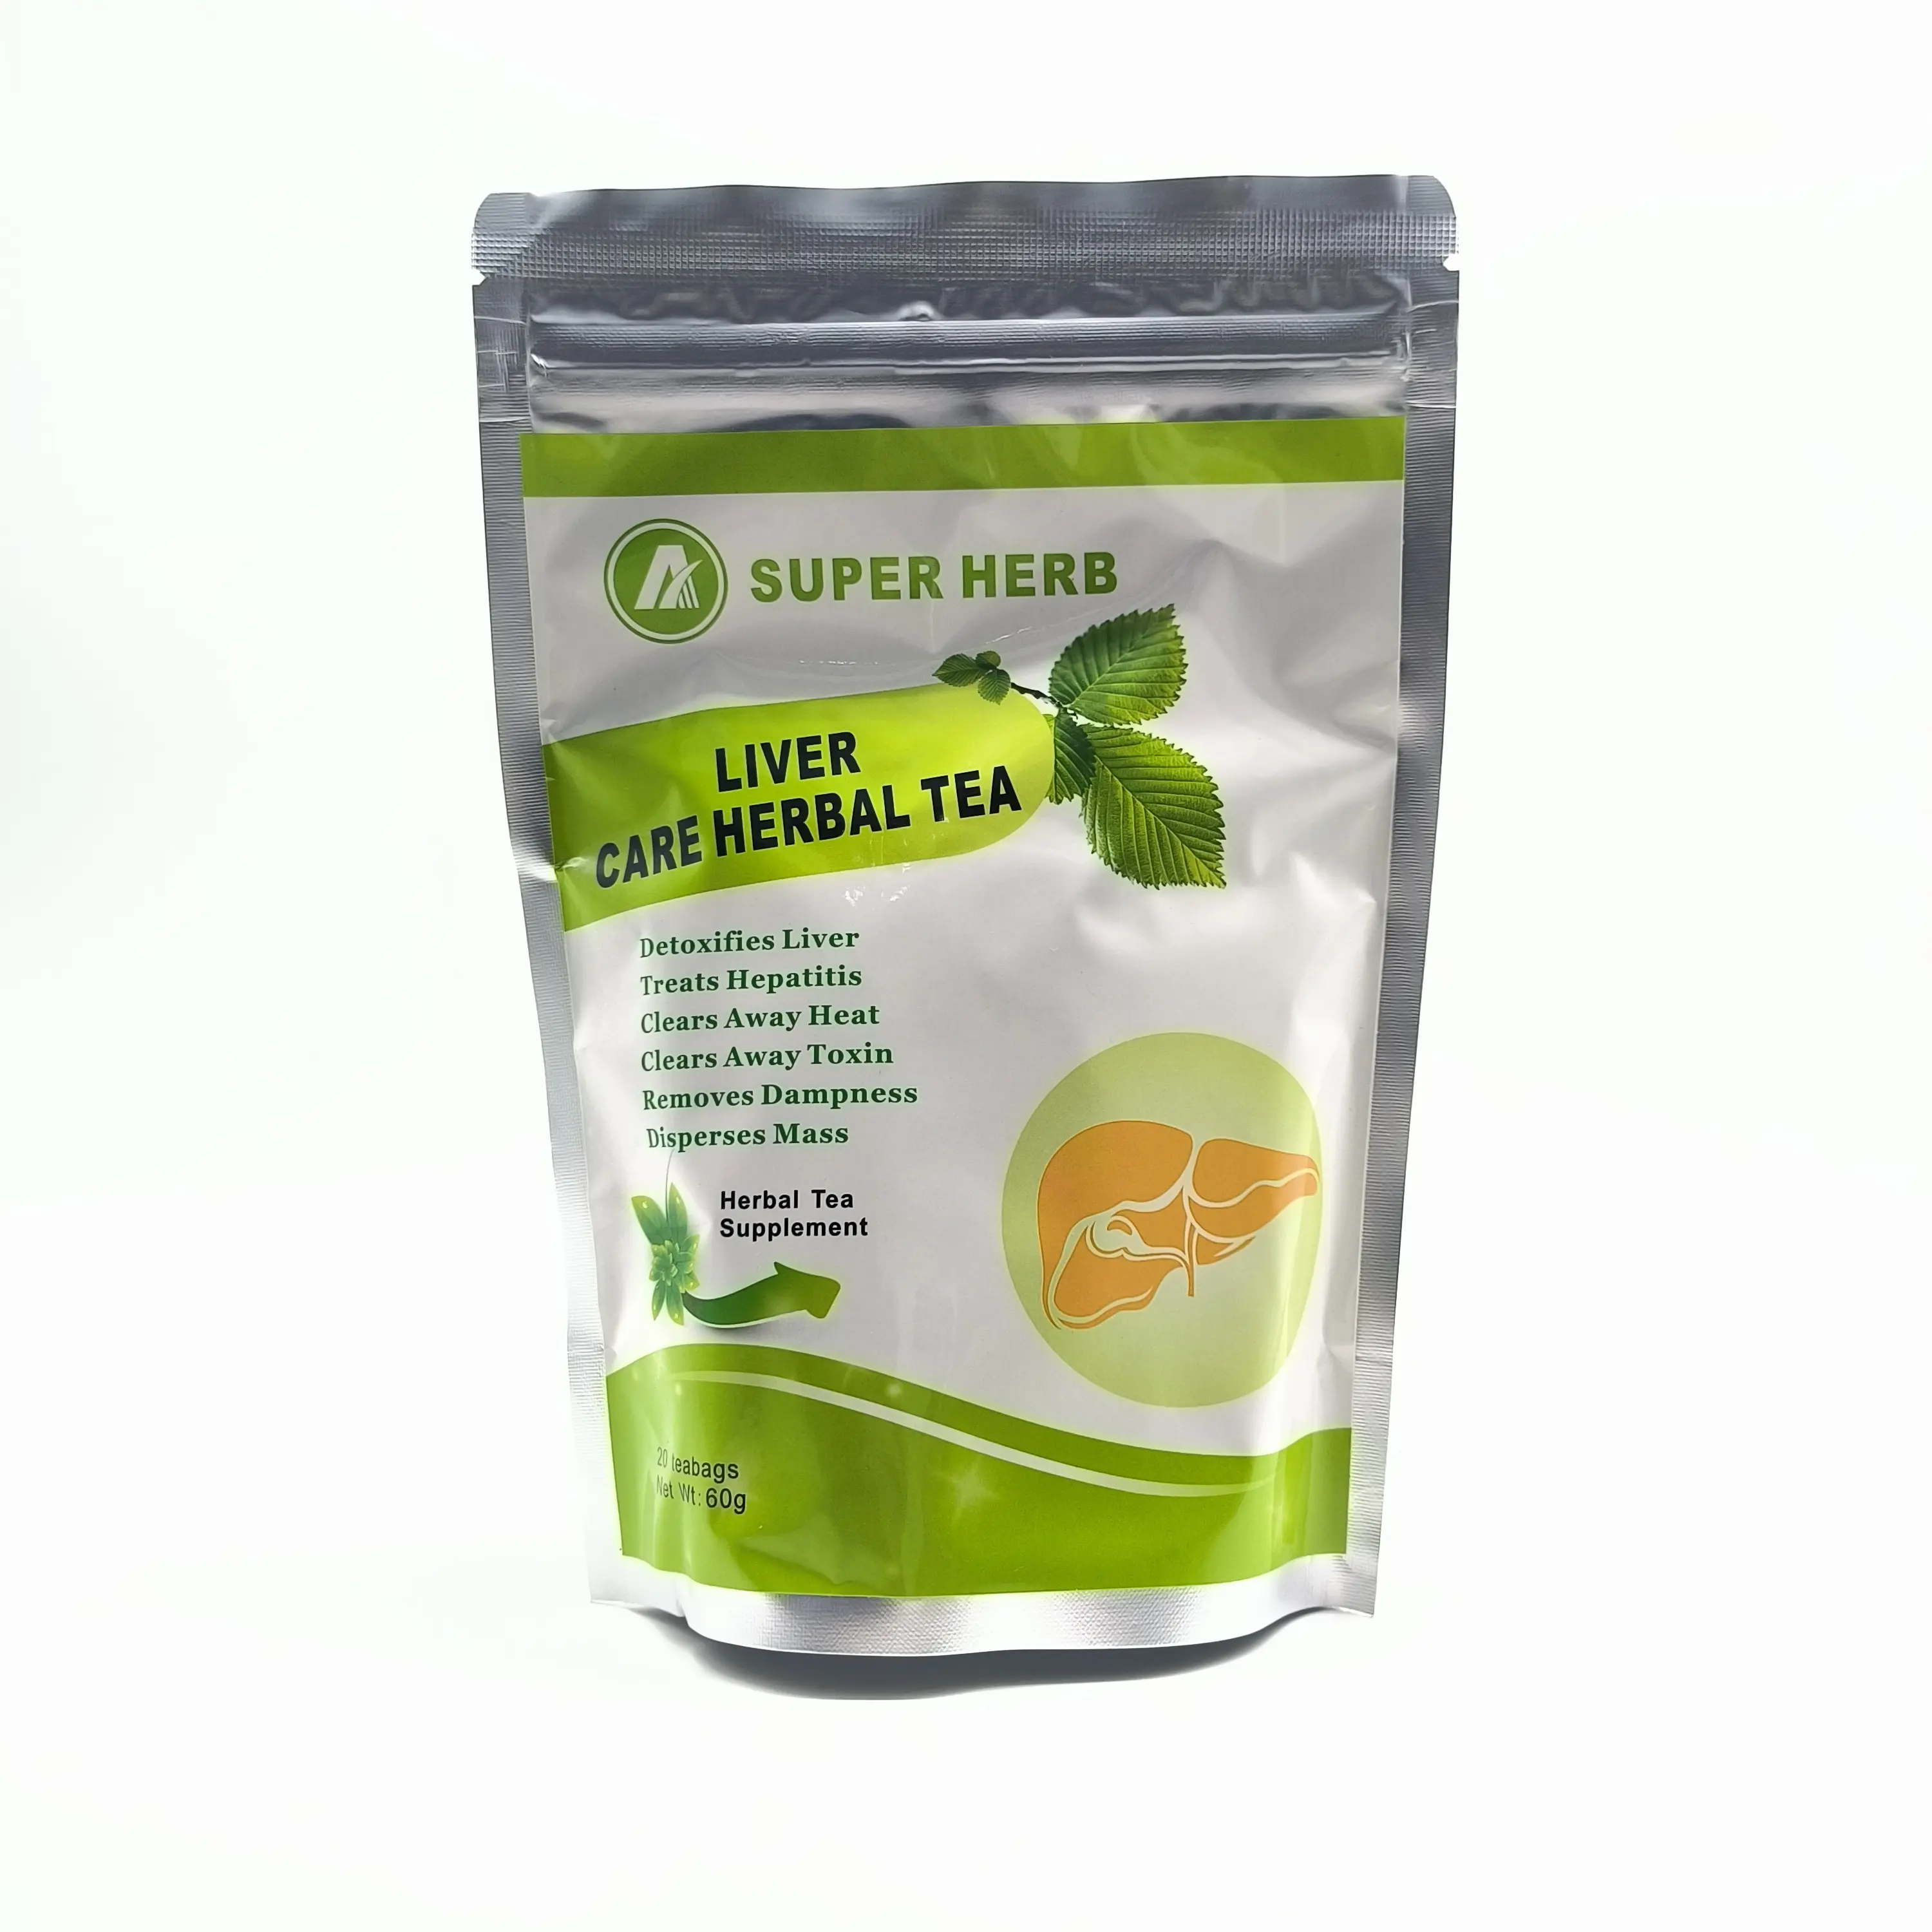 Herbal Cina Label pribadi membersihkan untuk hati dan alkohol perawatan hati teh Herbal